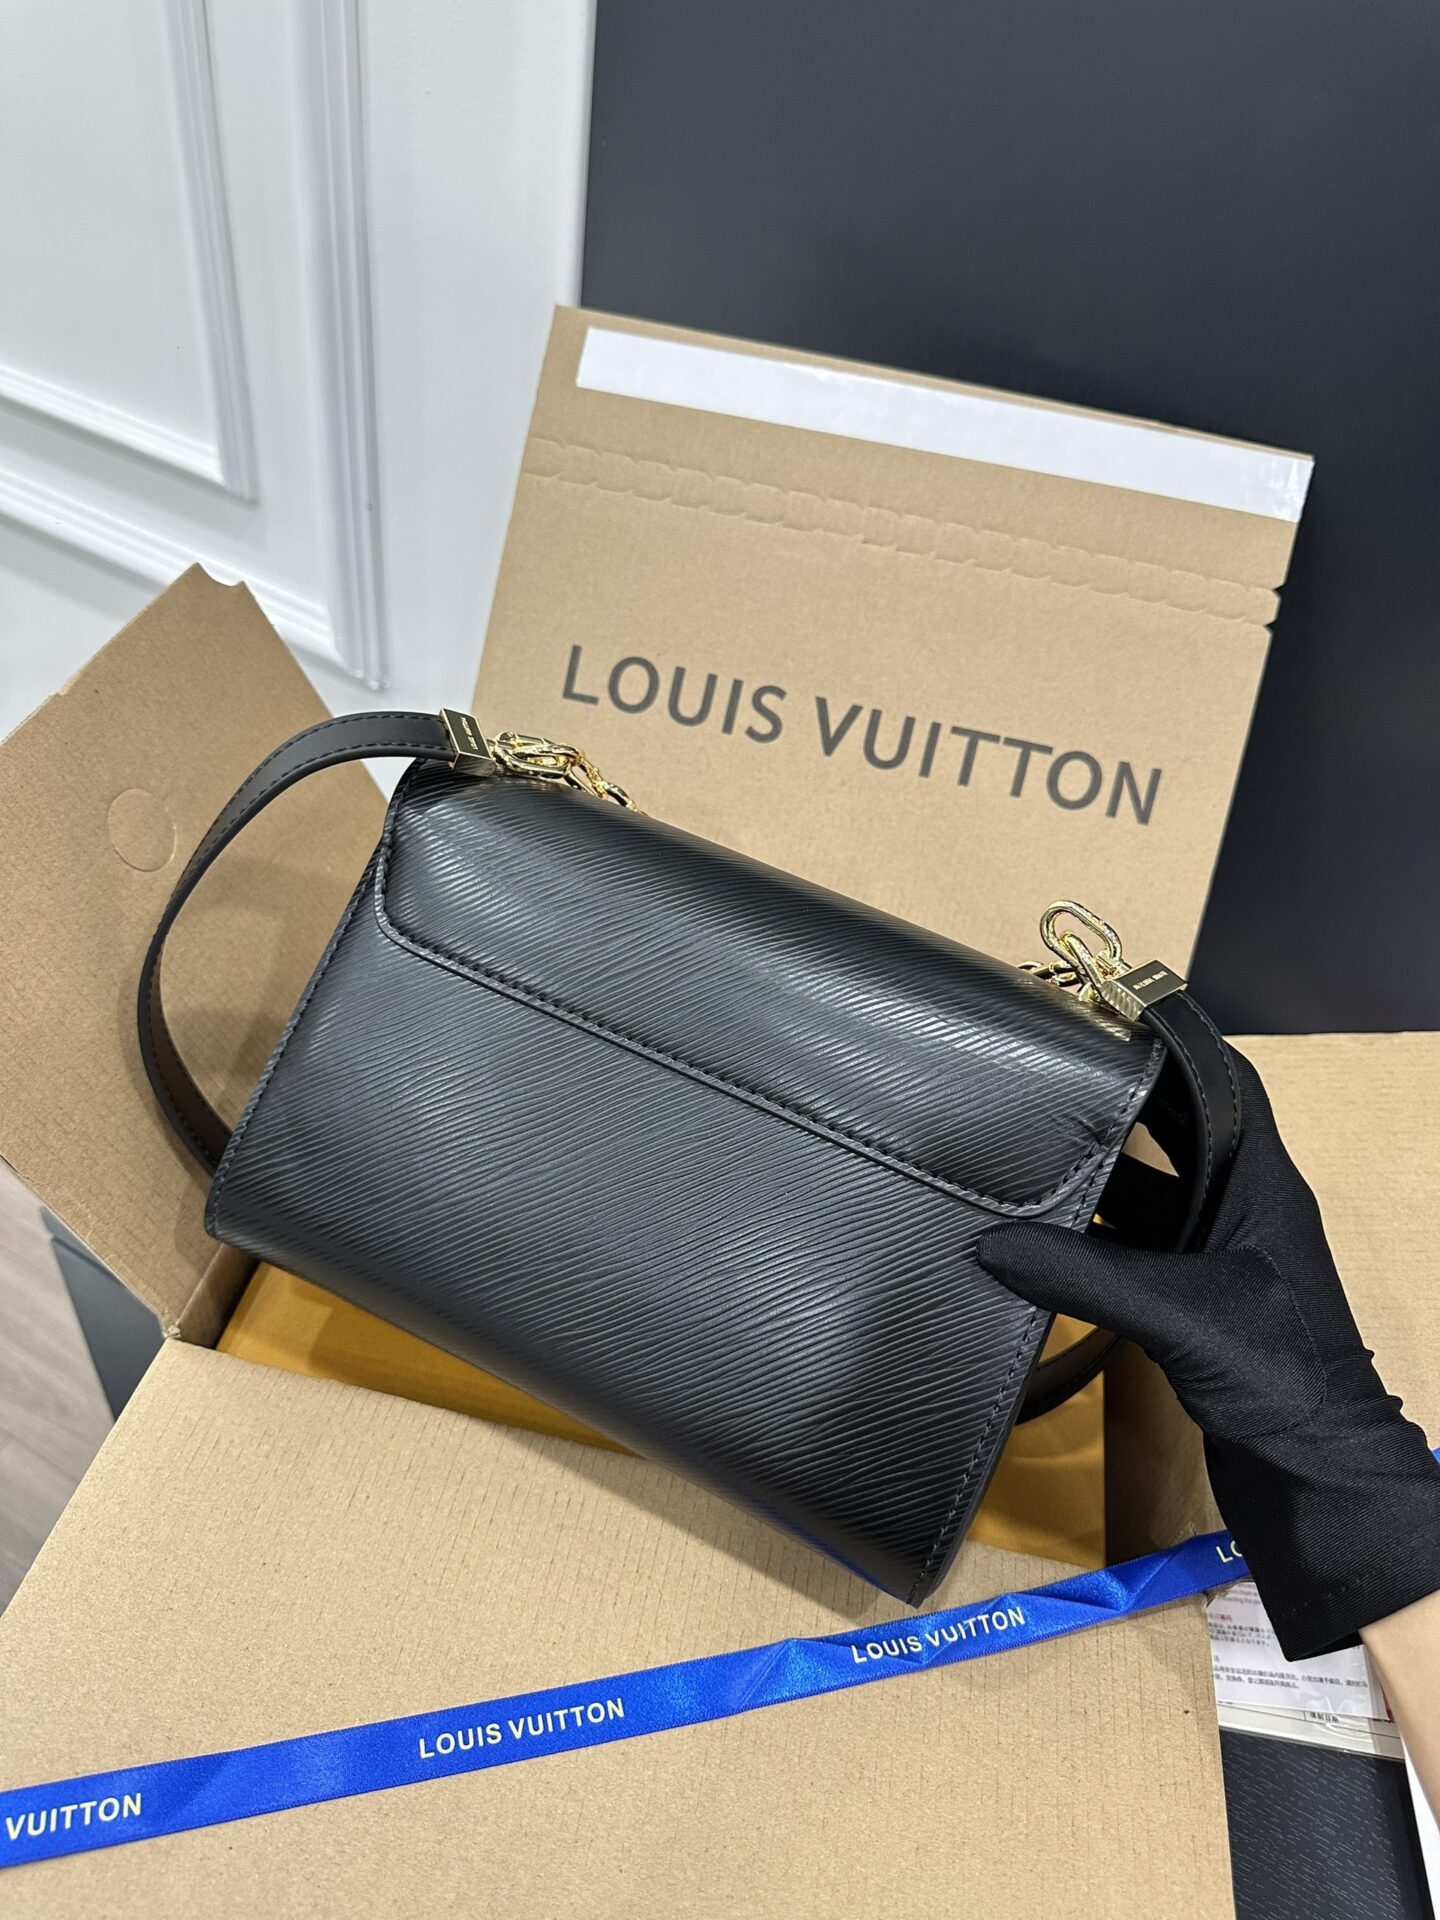 Louis Vuitton Epi Leather An Elegant and Modern Style  LOUIS VUITTON 